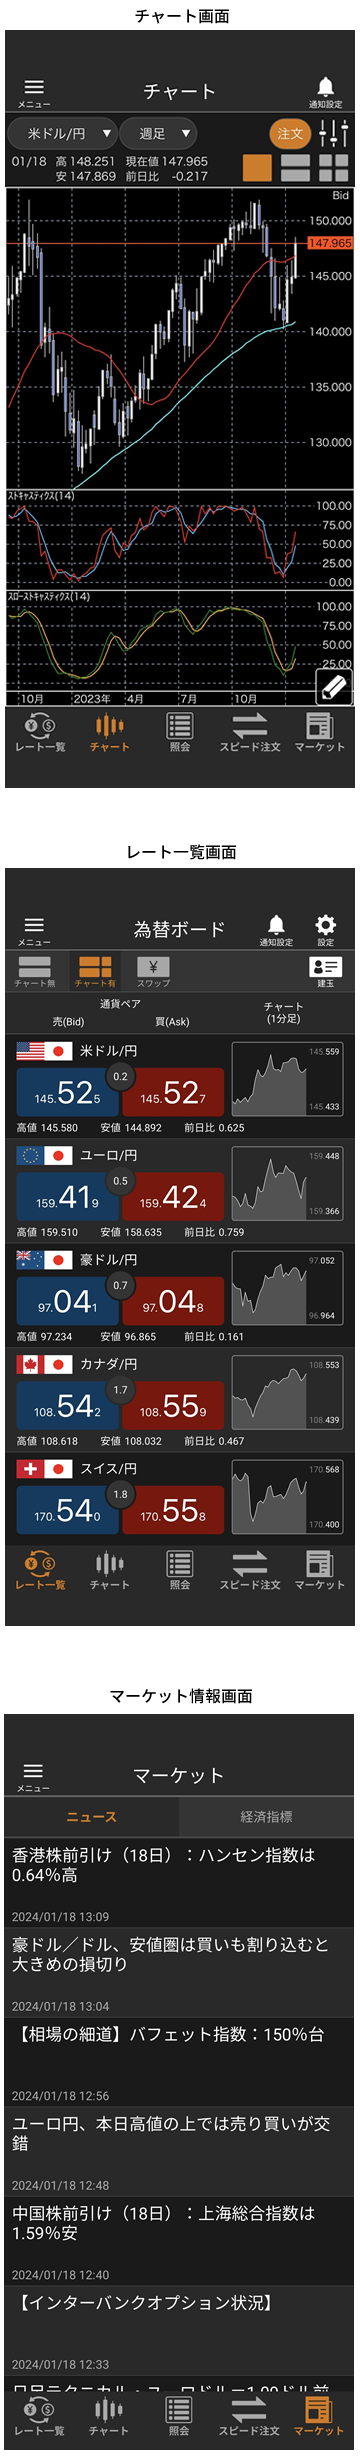 「松井証券 FXアプリ」の各種マーケット情報画面